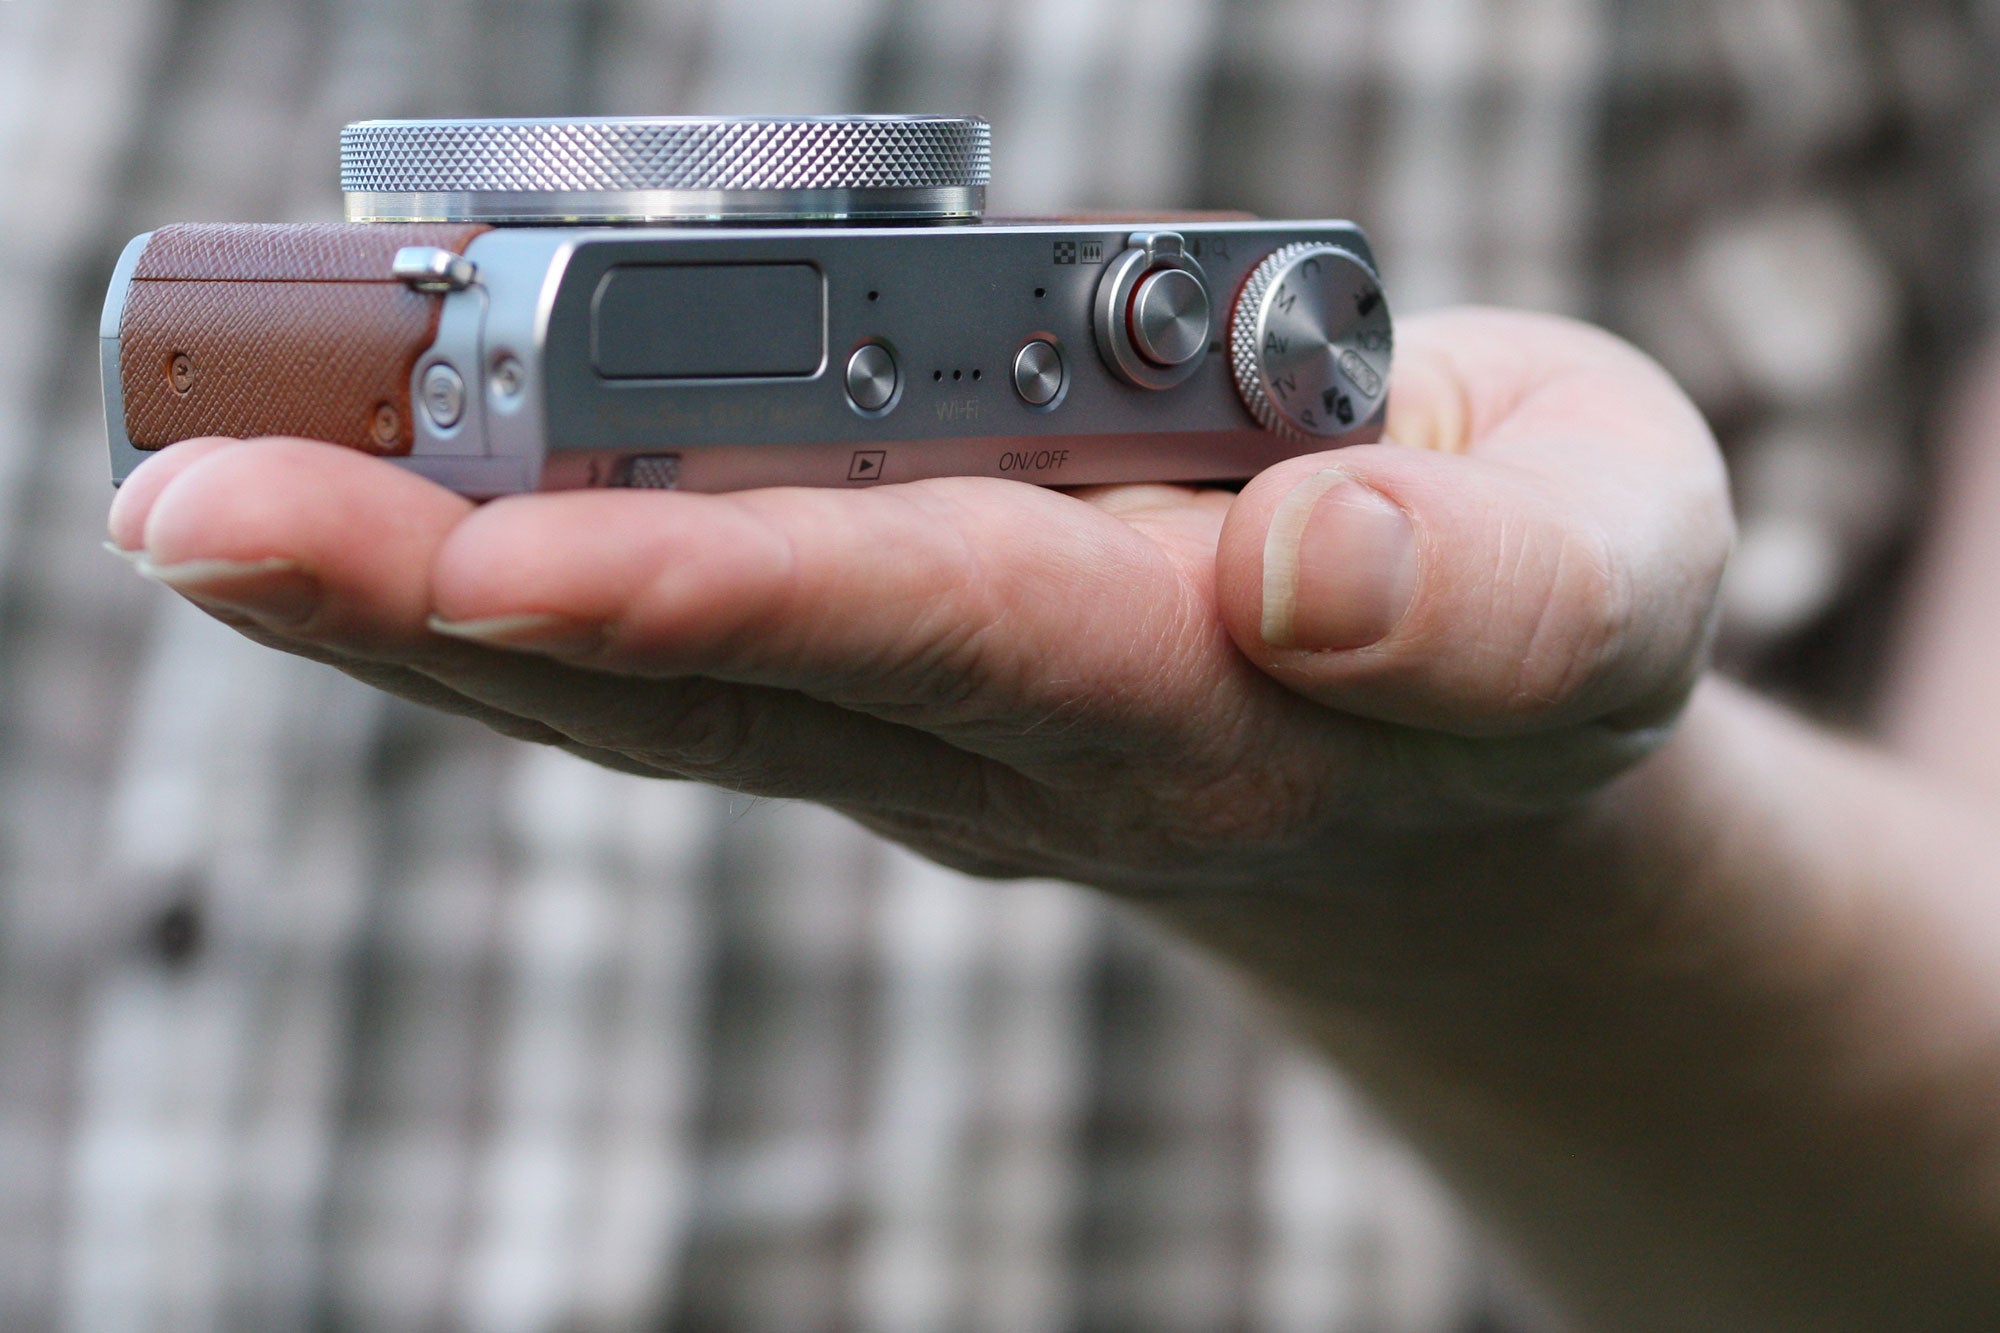 メーカー希望小売価格 Canon PowerShot 2 MARK X G9 デジタルカメラ